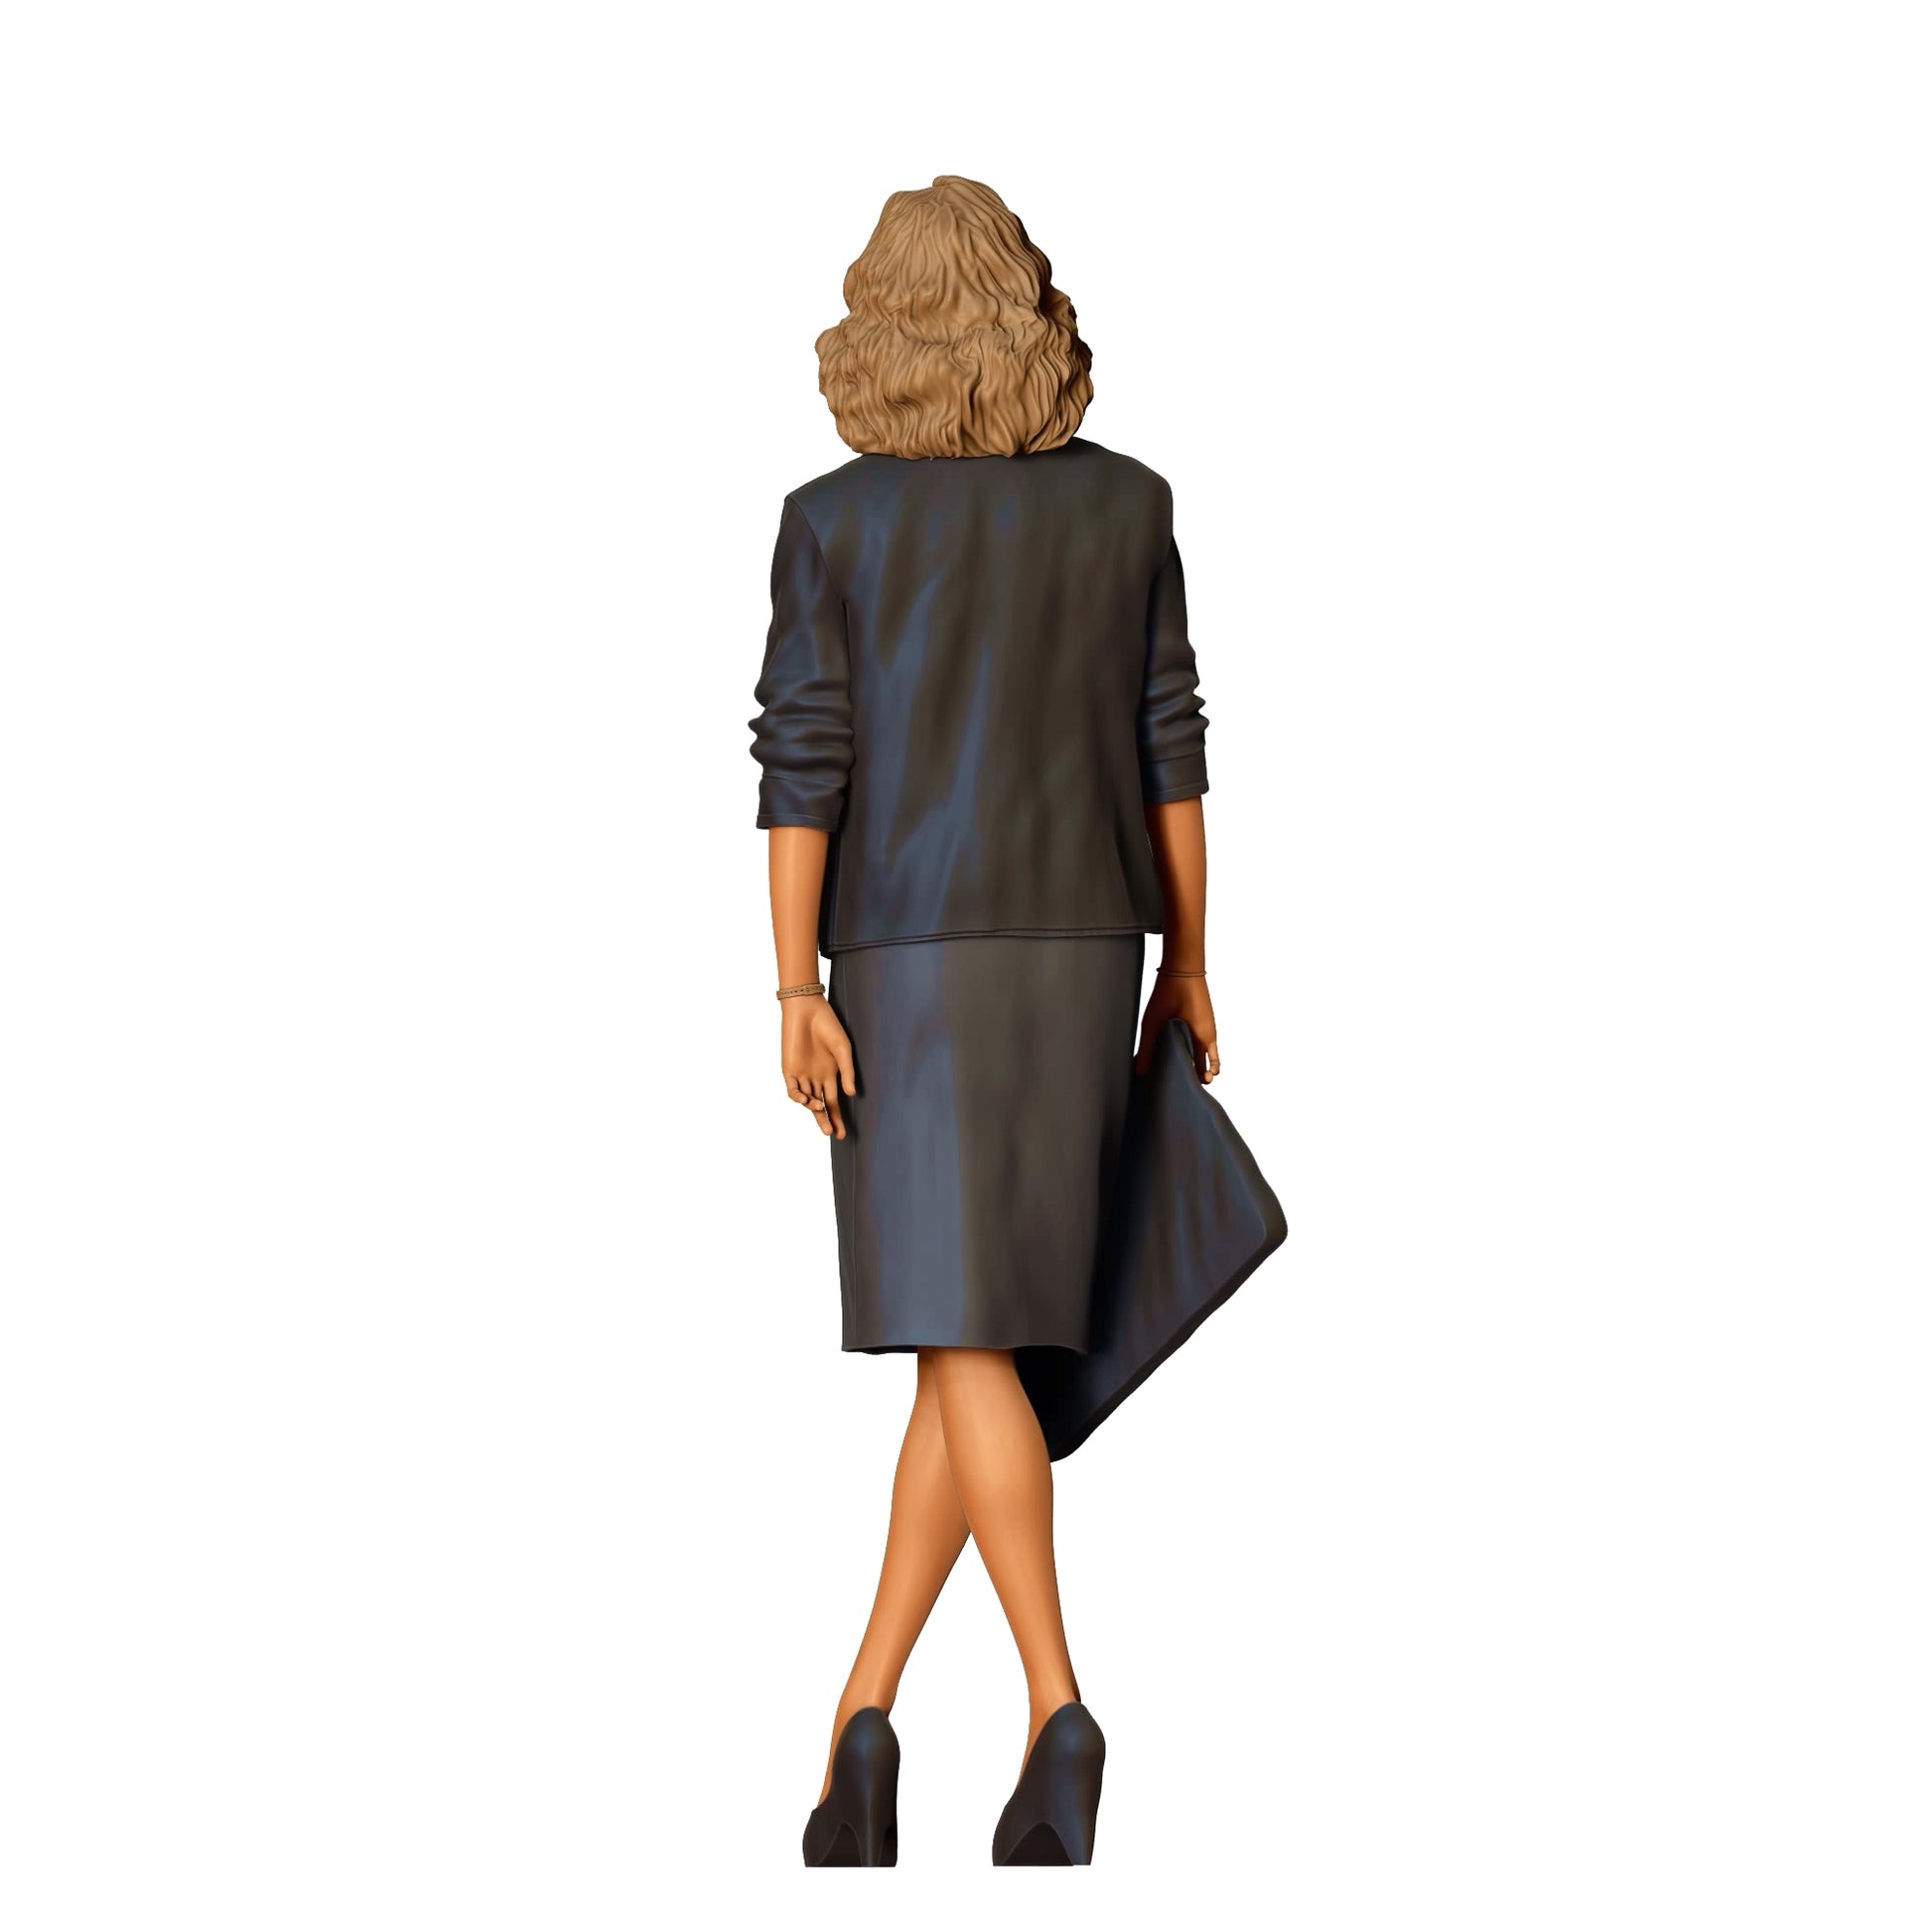 Produktfoto Diorama und Modellbau Miniatur Figur: Attraktive Frau - Ausbilderin mit Mappe